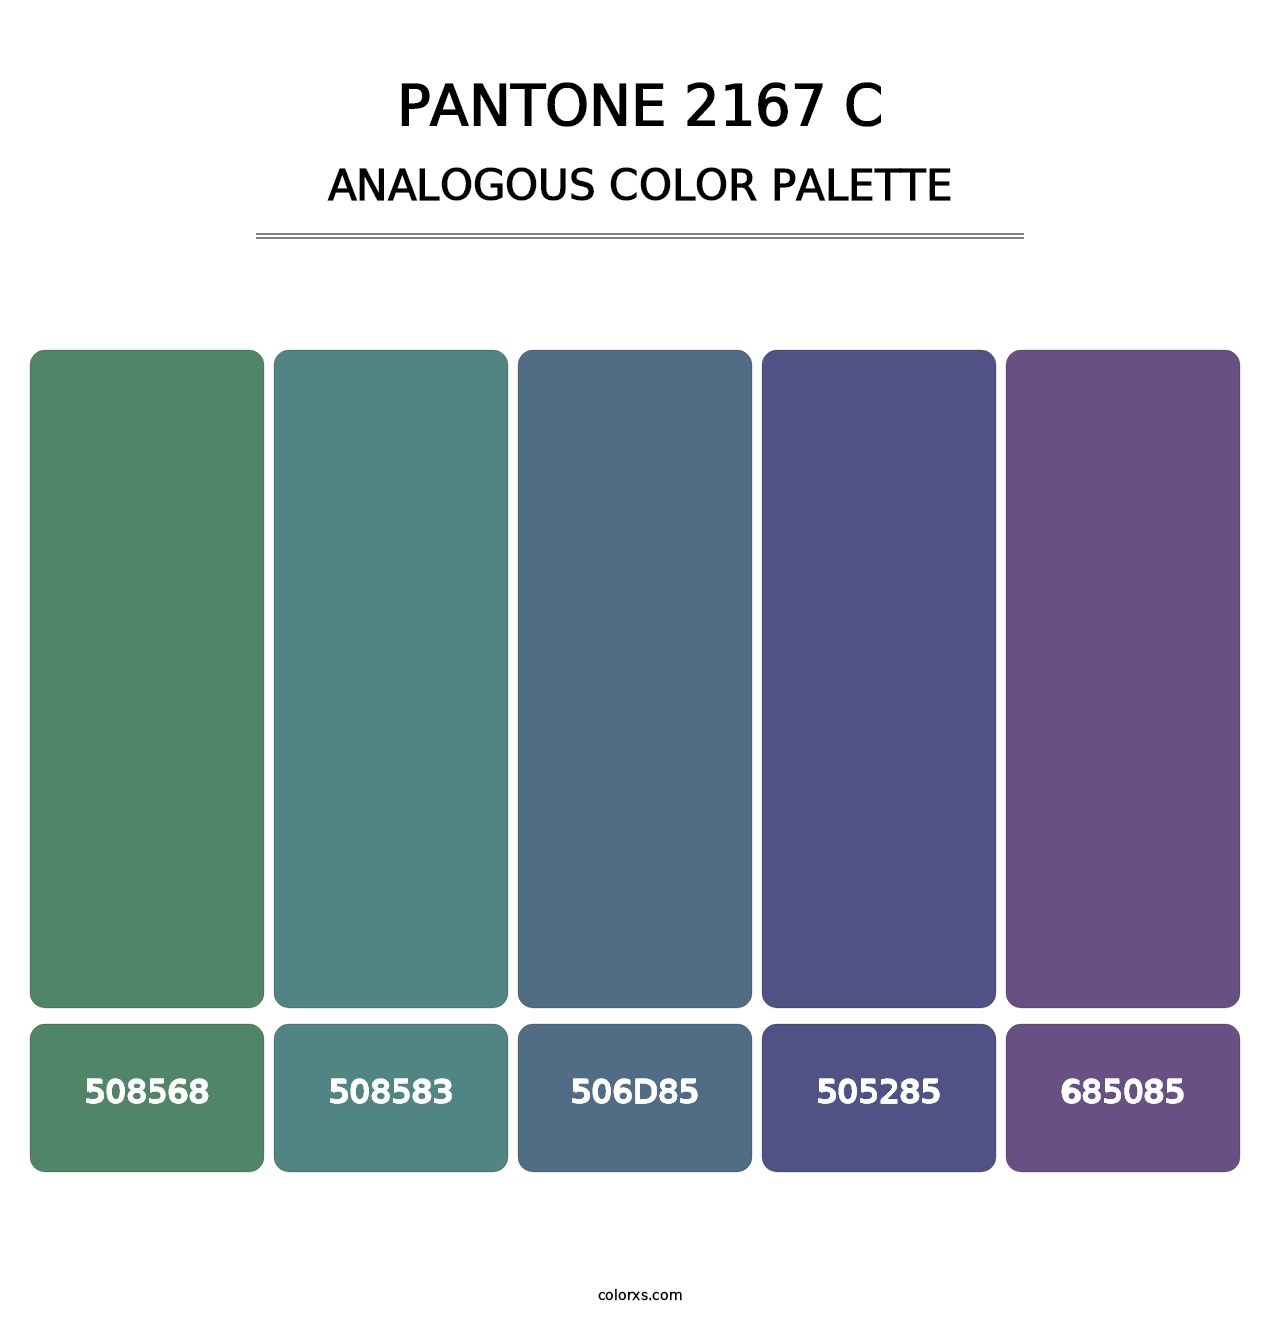 PANTONE 2167 C - Analogous Color Palette